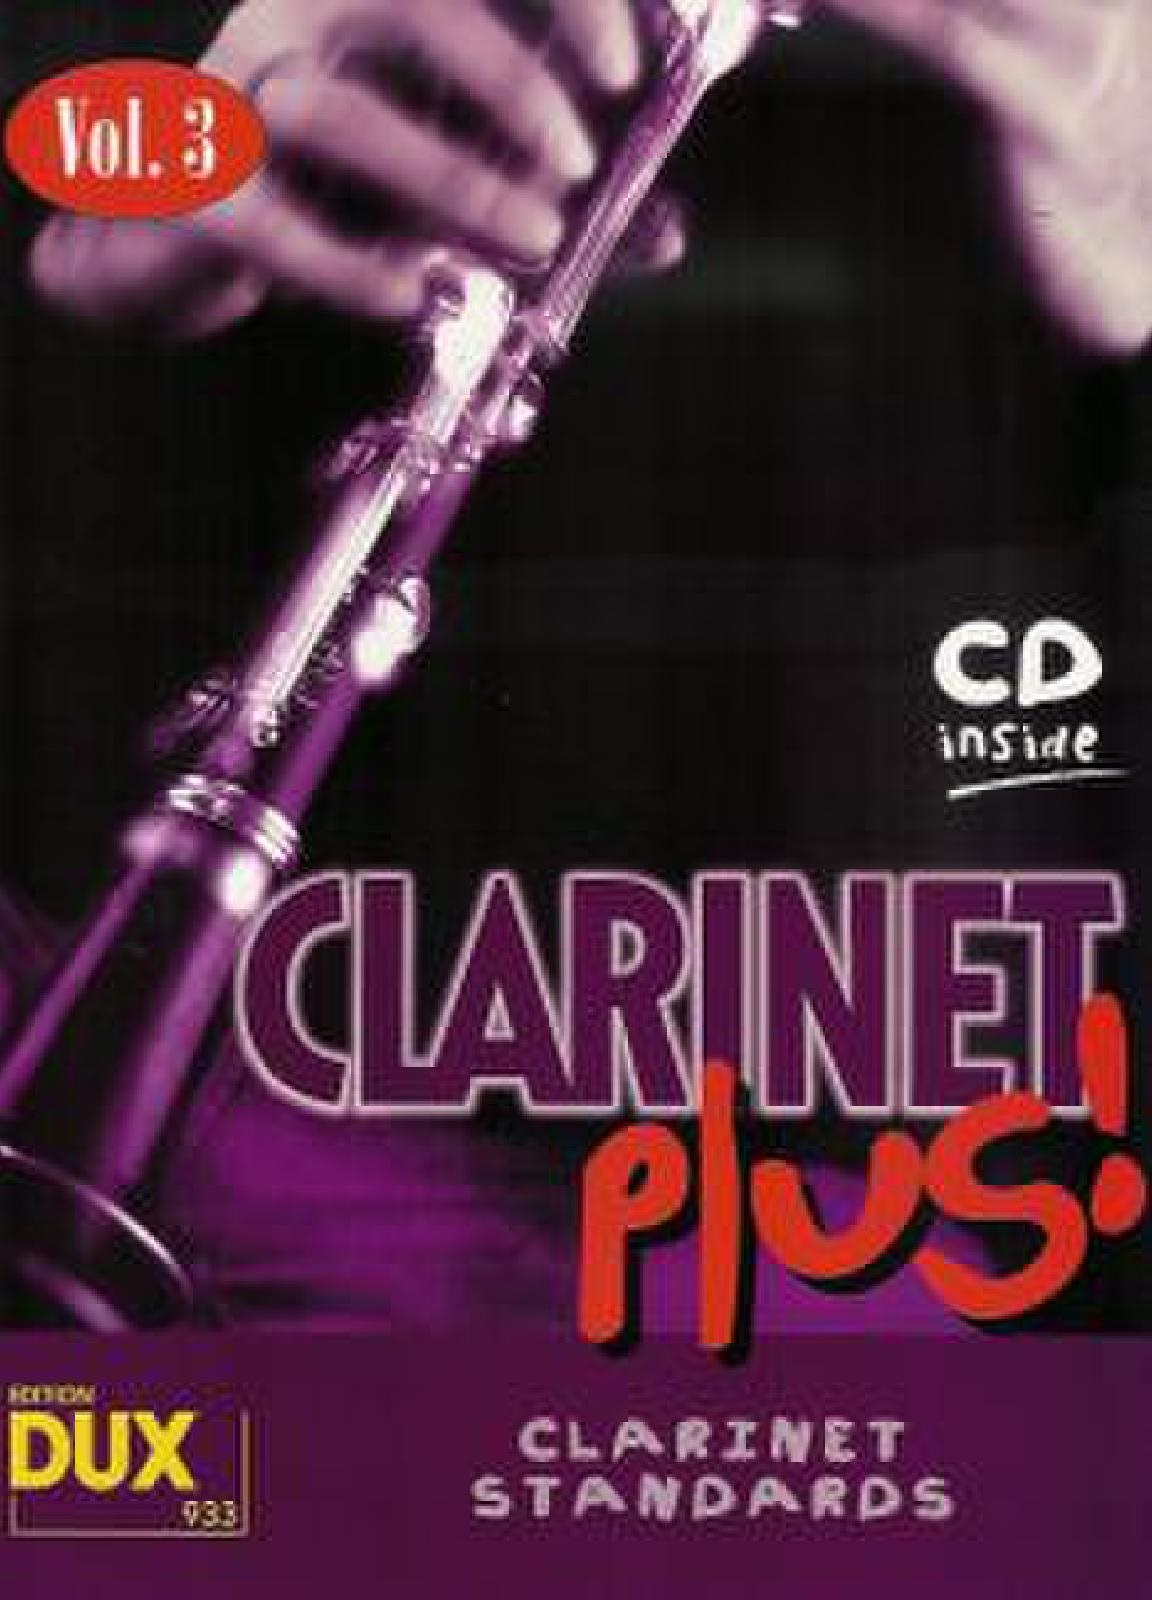 Clarinet Plus 3 - Clarinet Standards